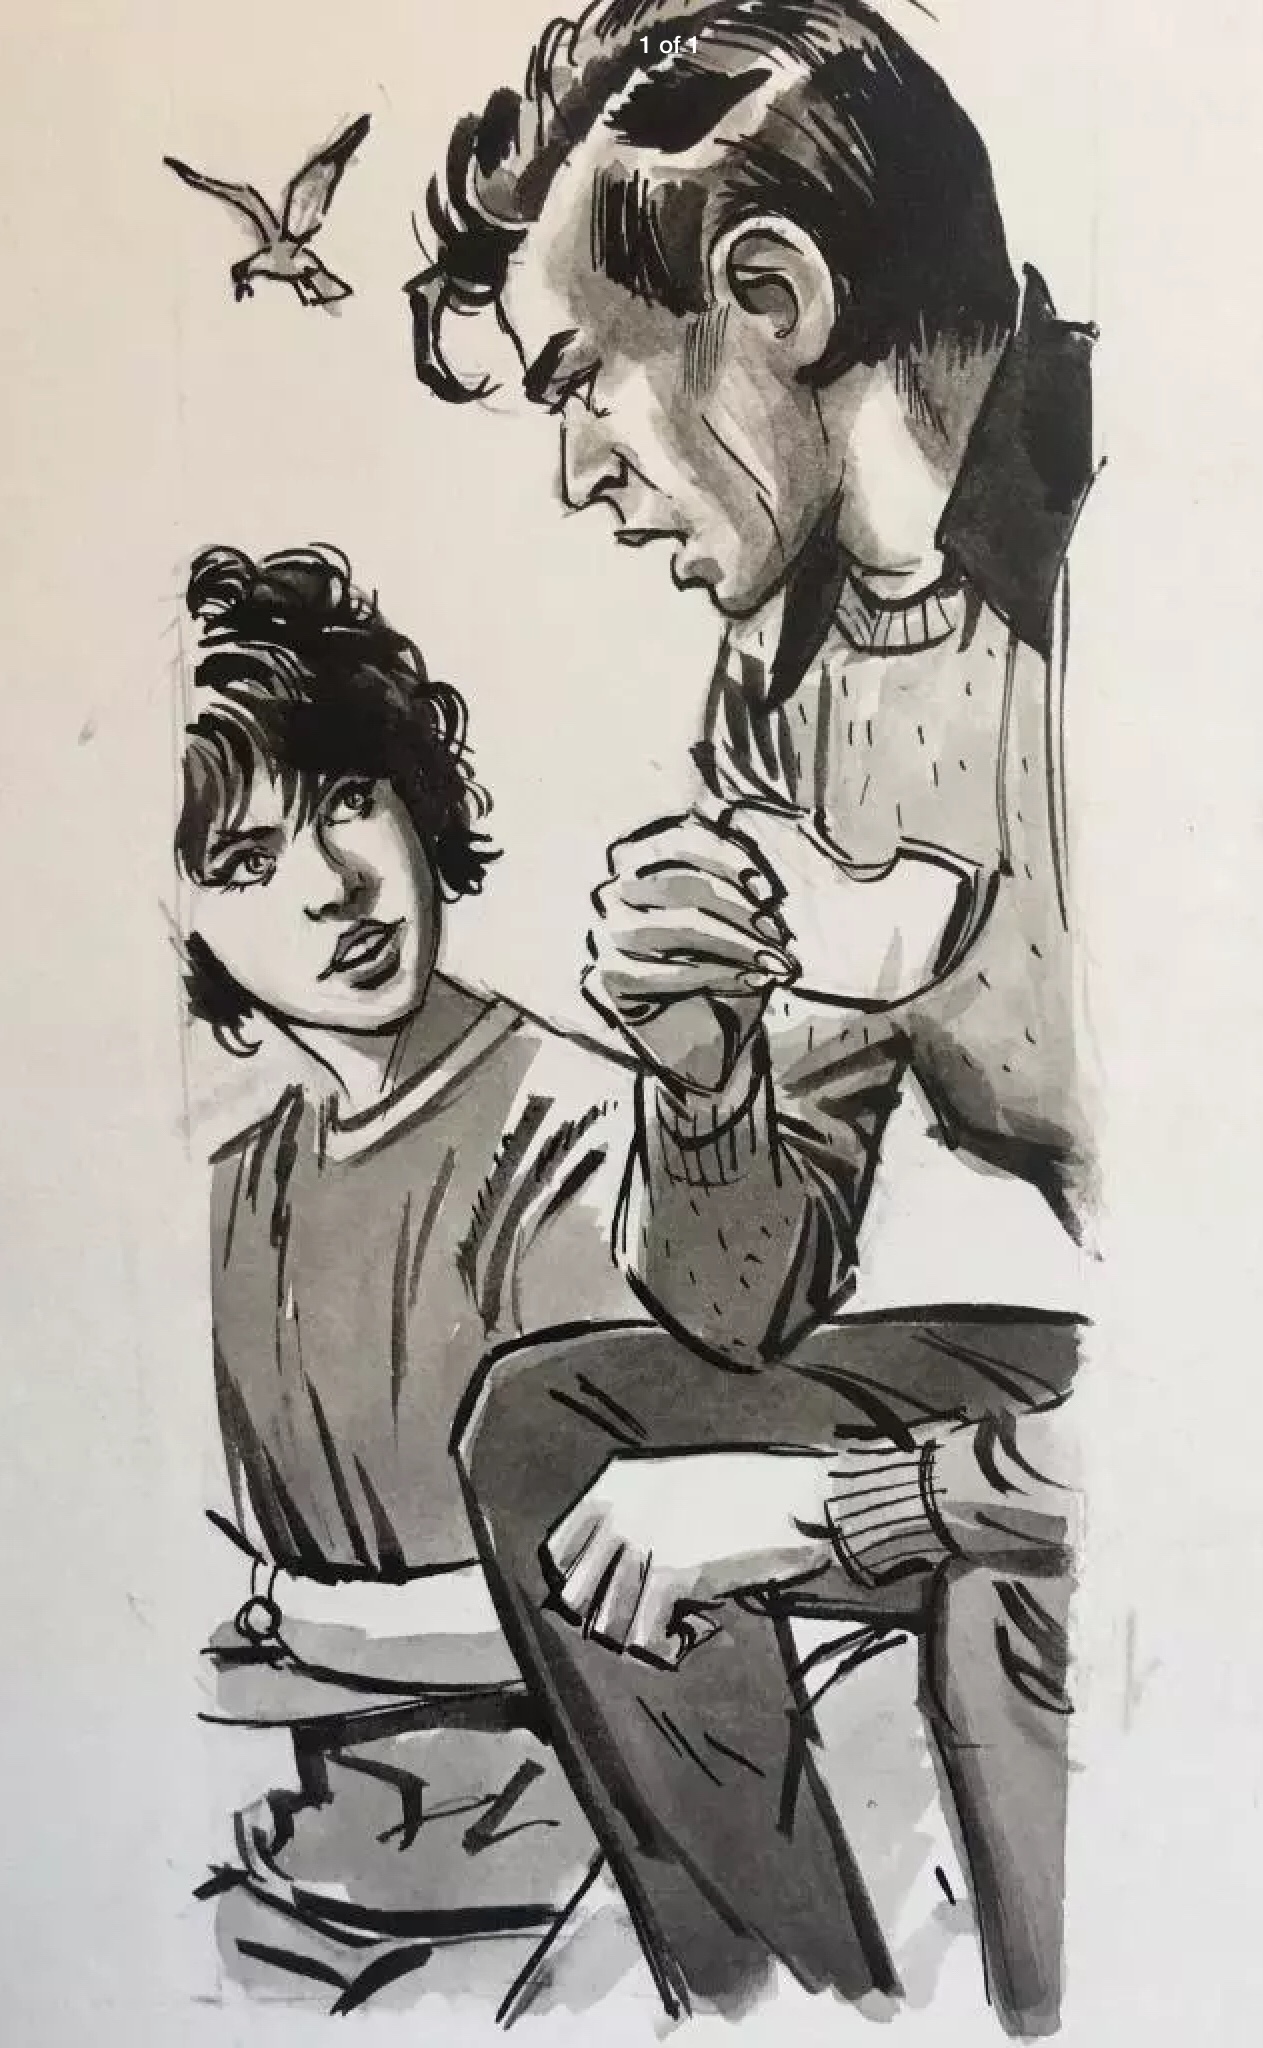 1980s Famous Five illustration by Leslie Branton